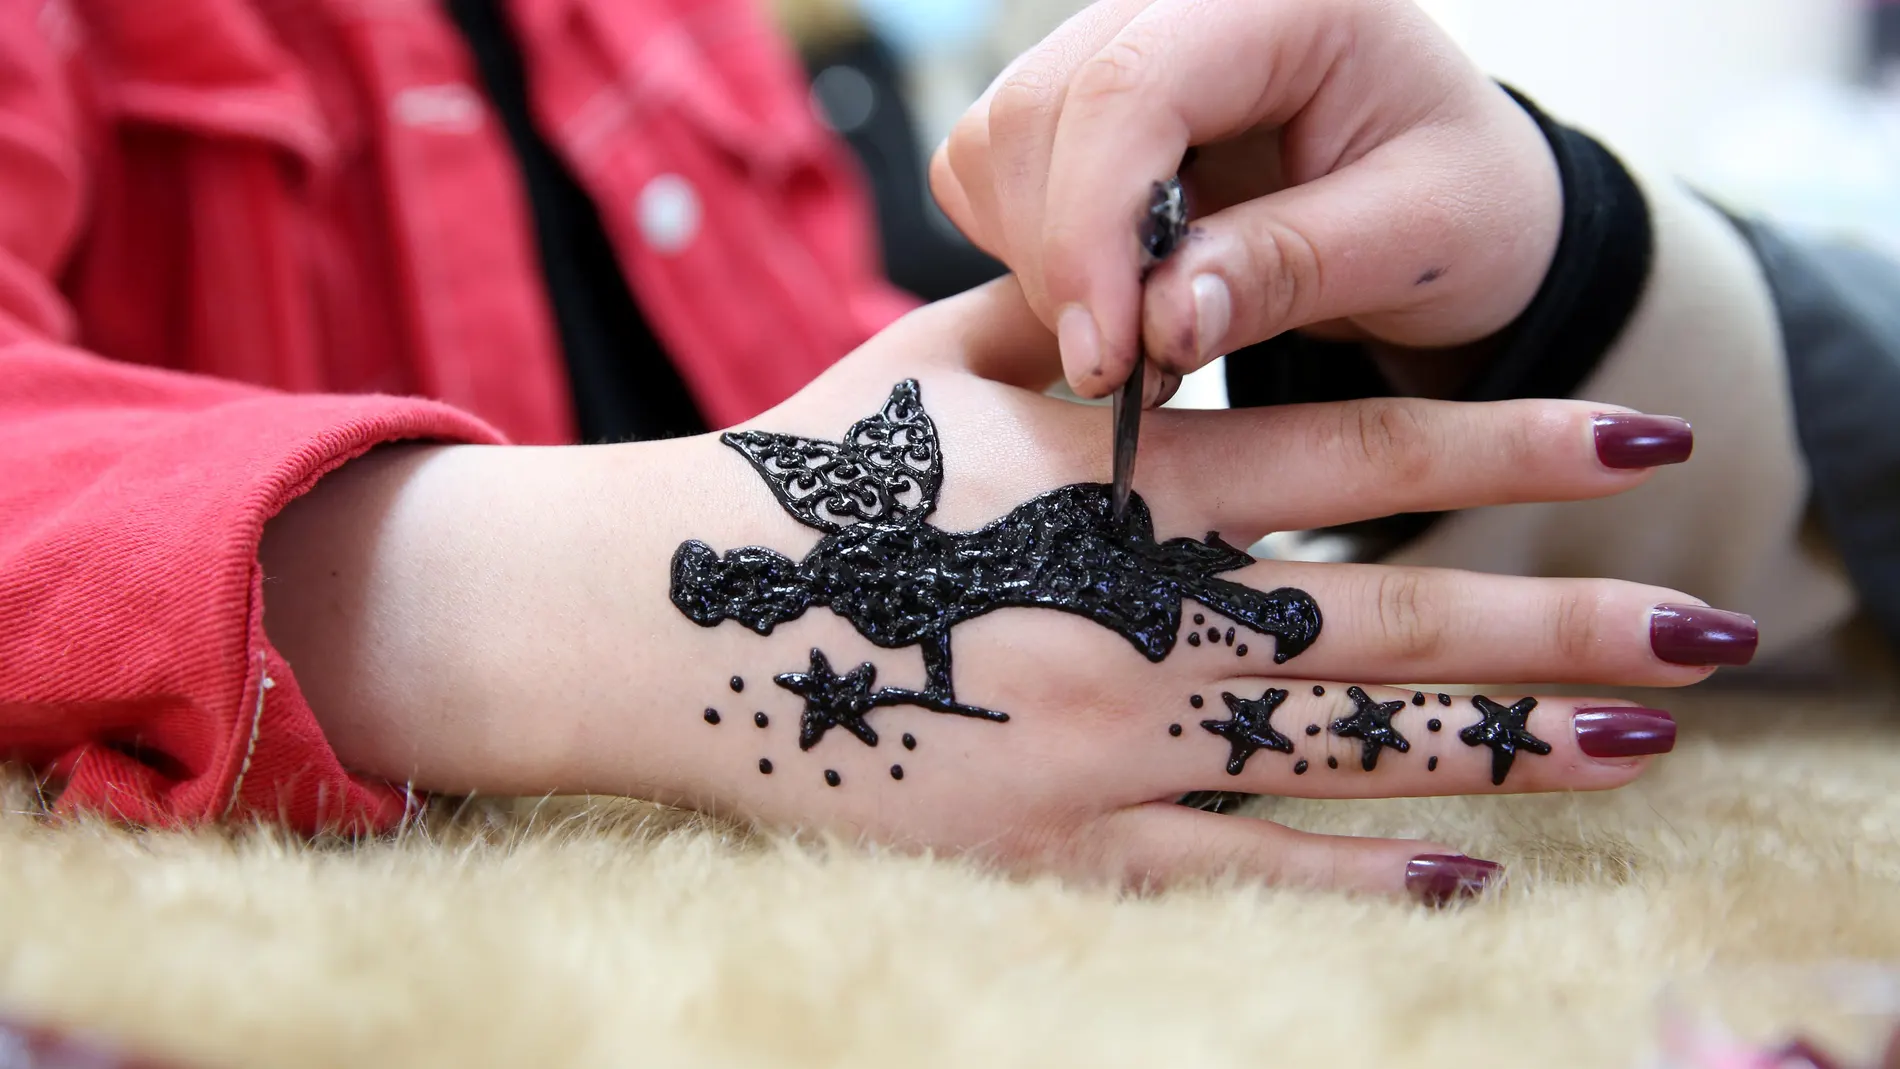 SI desea hacerse un tatuaje temporal, asegúrese de que es de henna natural y no de henna negra